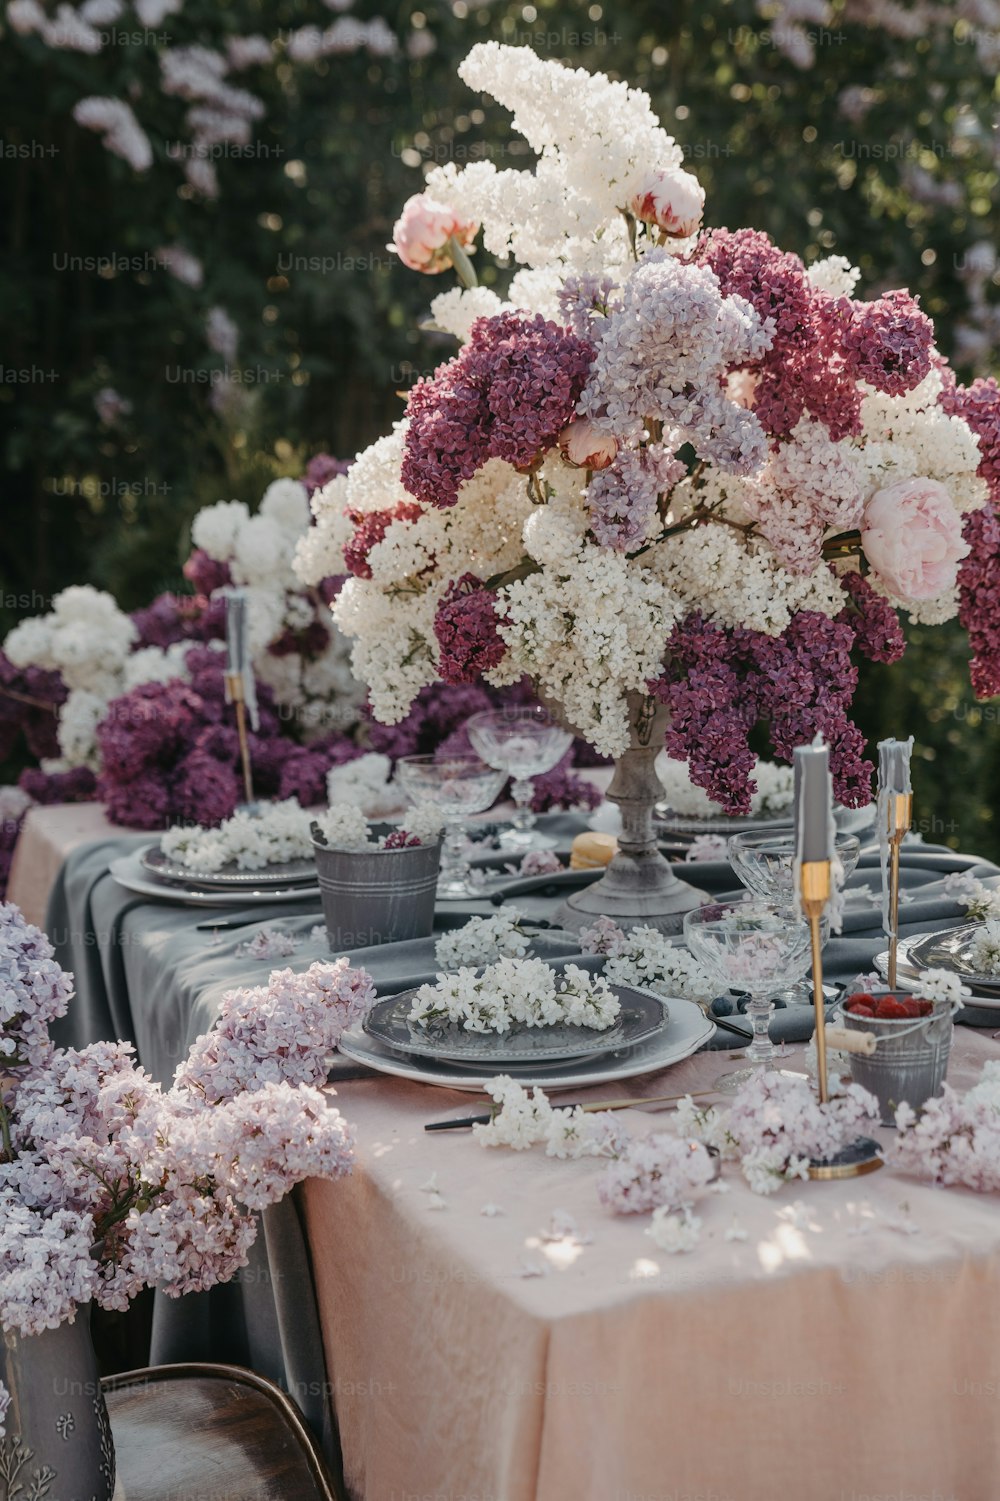 Une table est dressée avec des assiettes et des fleurs